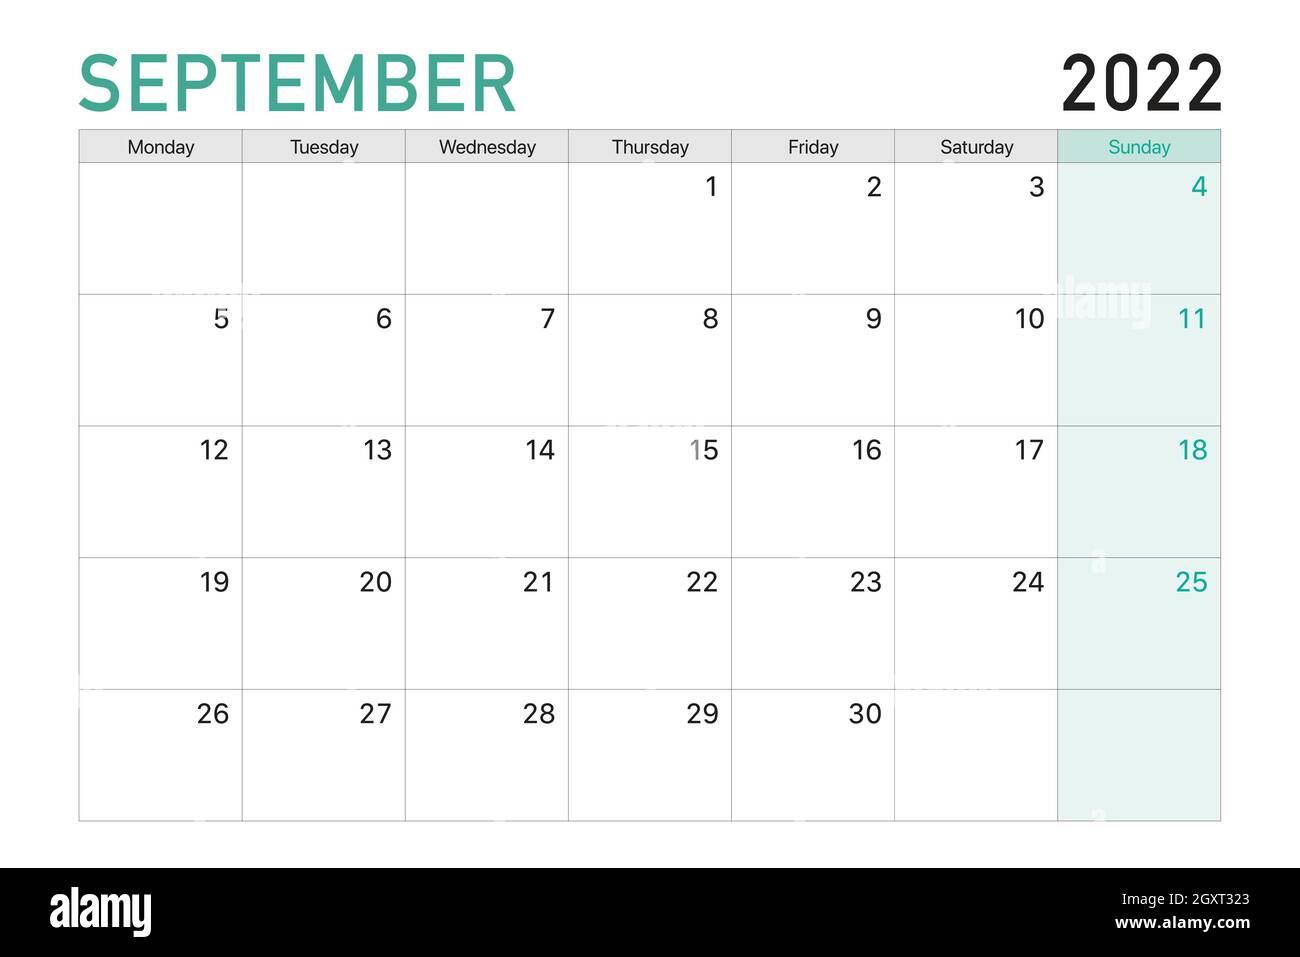 September 2022 Desktop Calendar 2022 September Illustration Vector Desk Calendar Weeks Start On Monday In  Light Green And White Theme Stock Vector Image & Art - Alamy